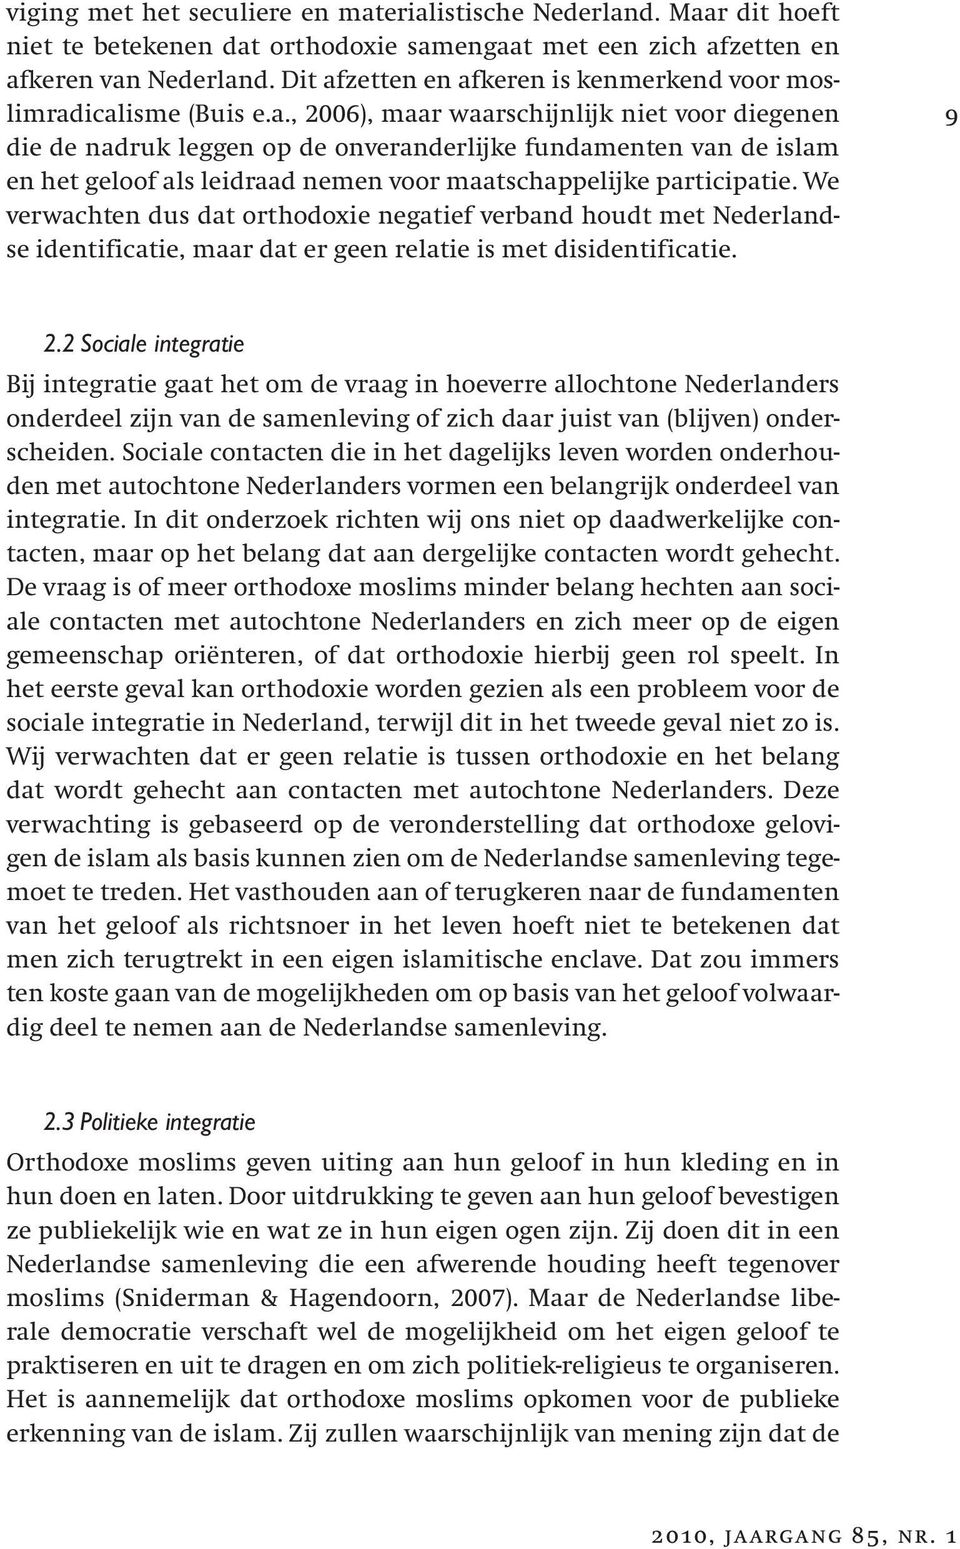 We verwachten dus dat orthodoxie negatief verband houdt met Nederlandse identificatie, maar dat er geen relatie is met disidentificatie. 9 2.